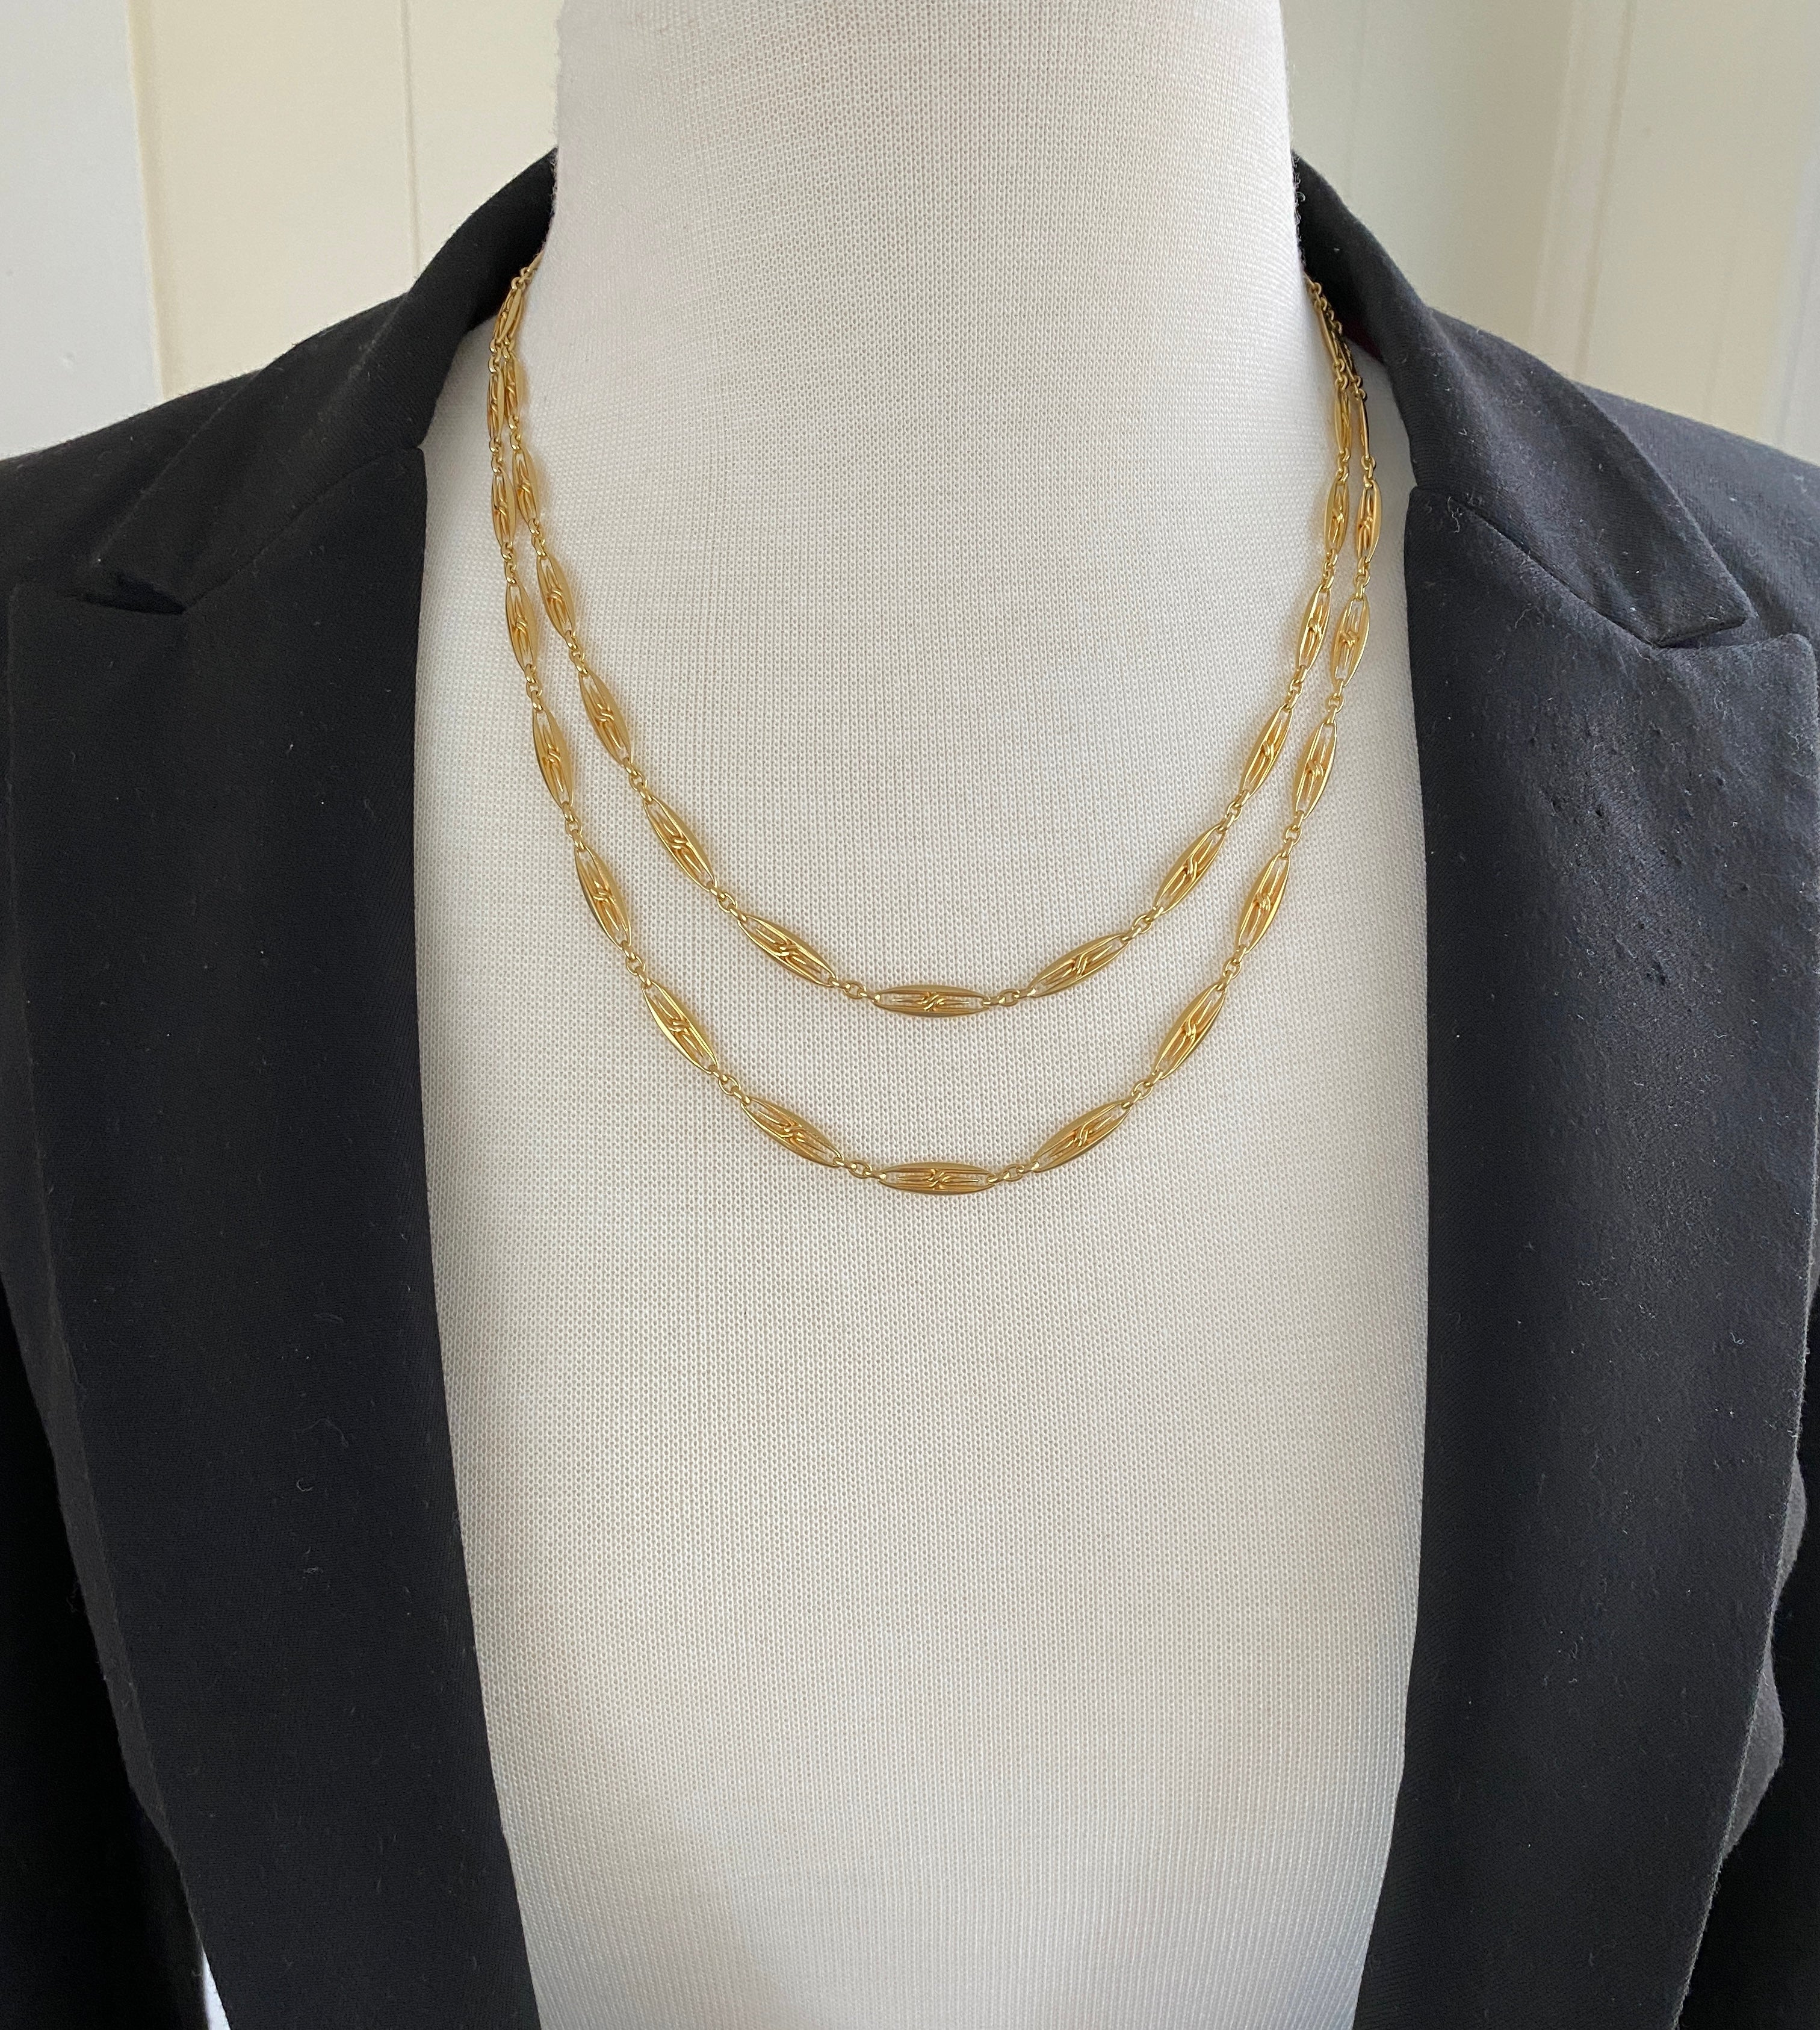 Premium Antique Gold Chain Necklace Set: Unique Temple Jewellery Designs  for a Distinctive Gold Look NL26383